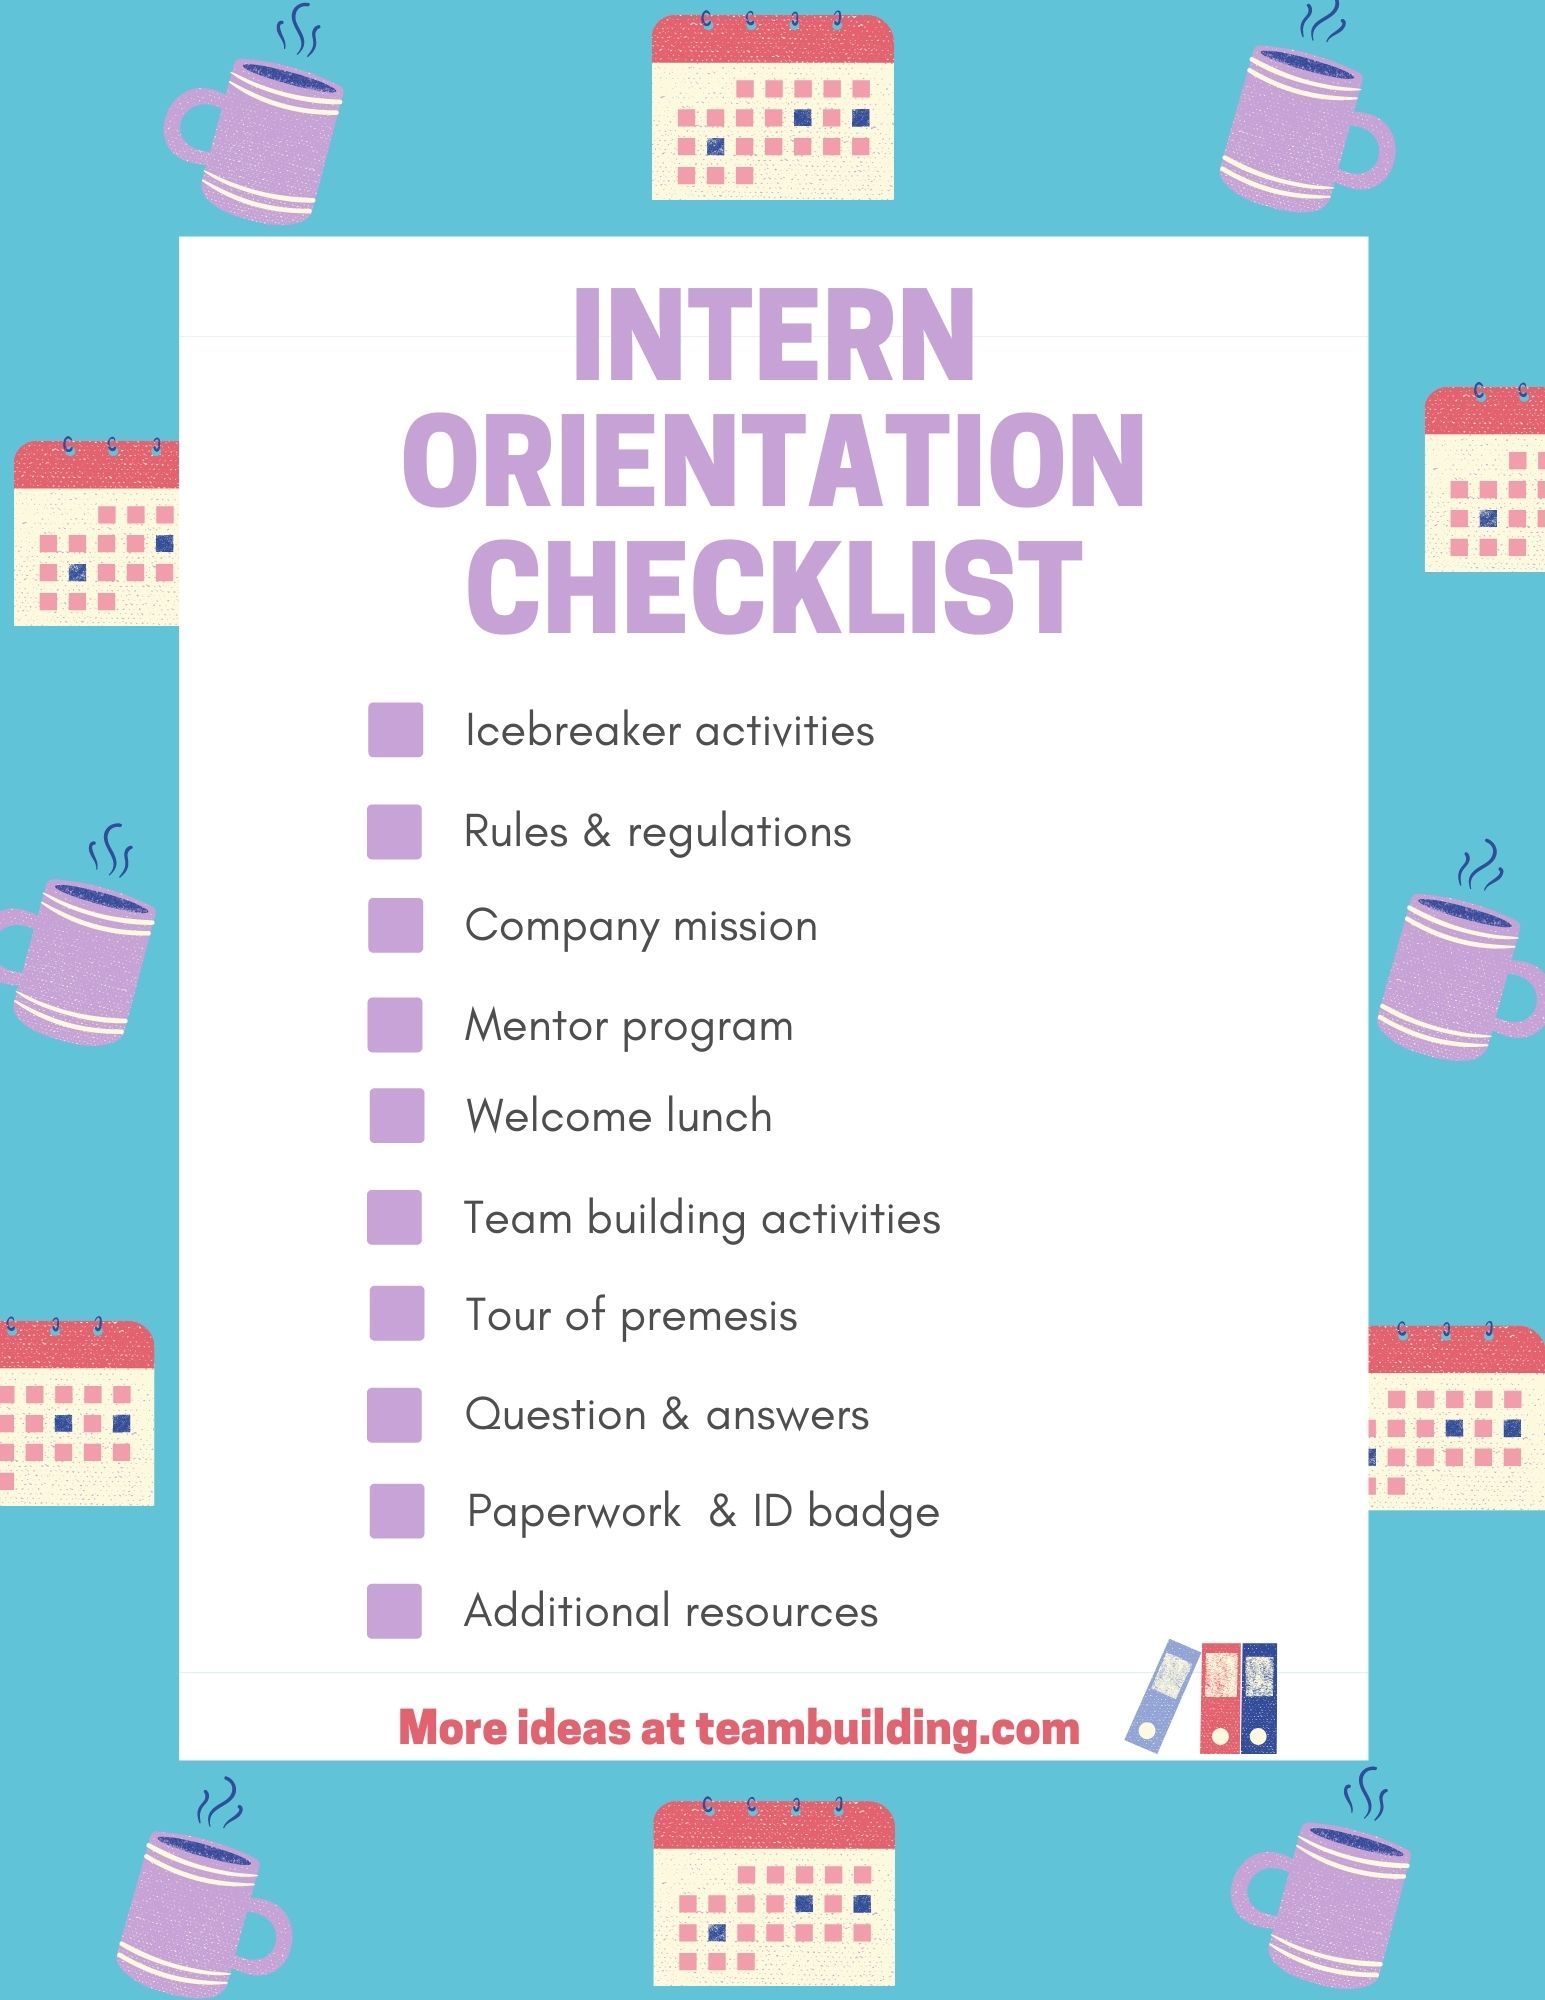 Intern orientation checklist